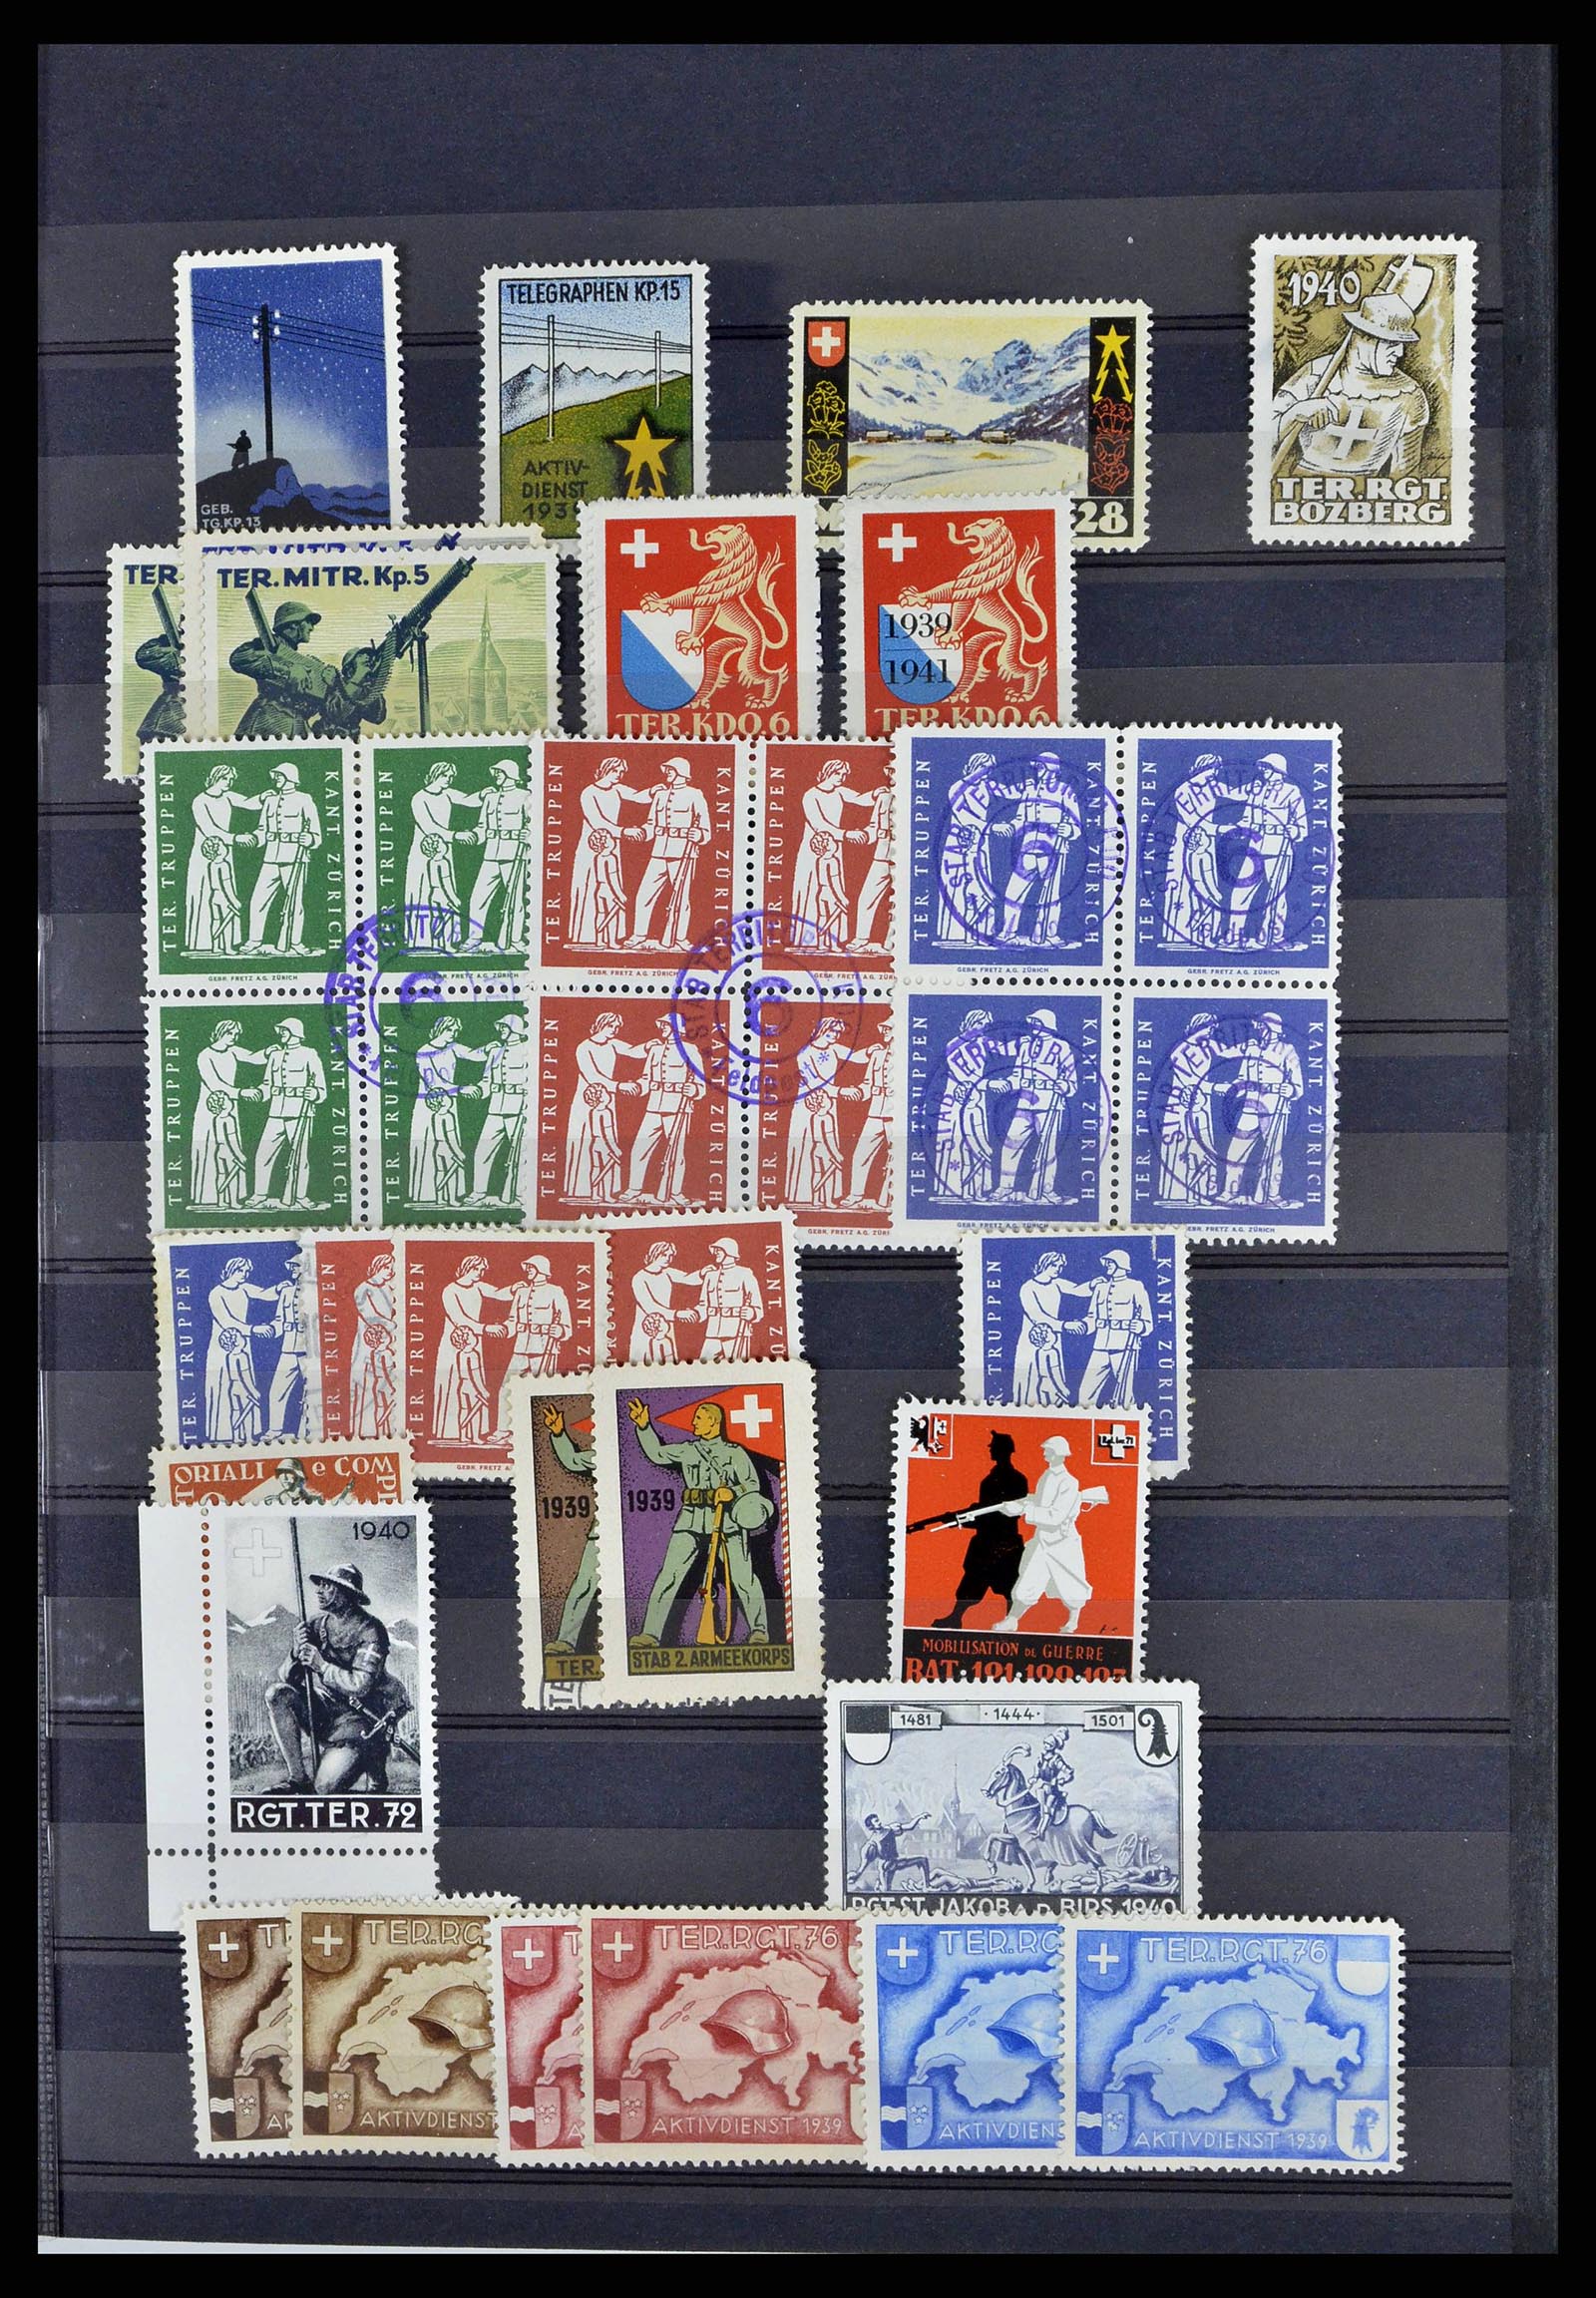 38768 0049 - Stamp collection 38768 Switzerland soldierstamps 1914-1945.